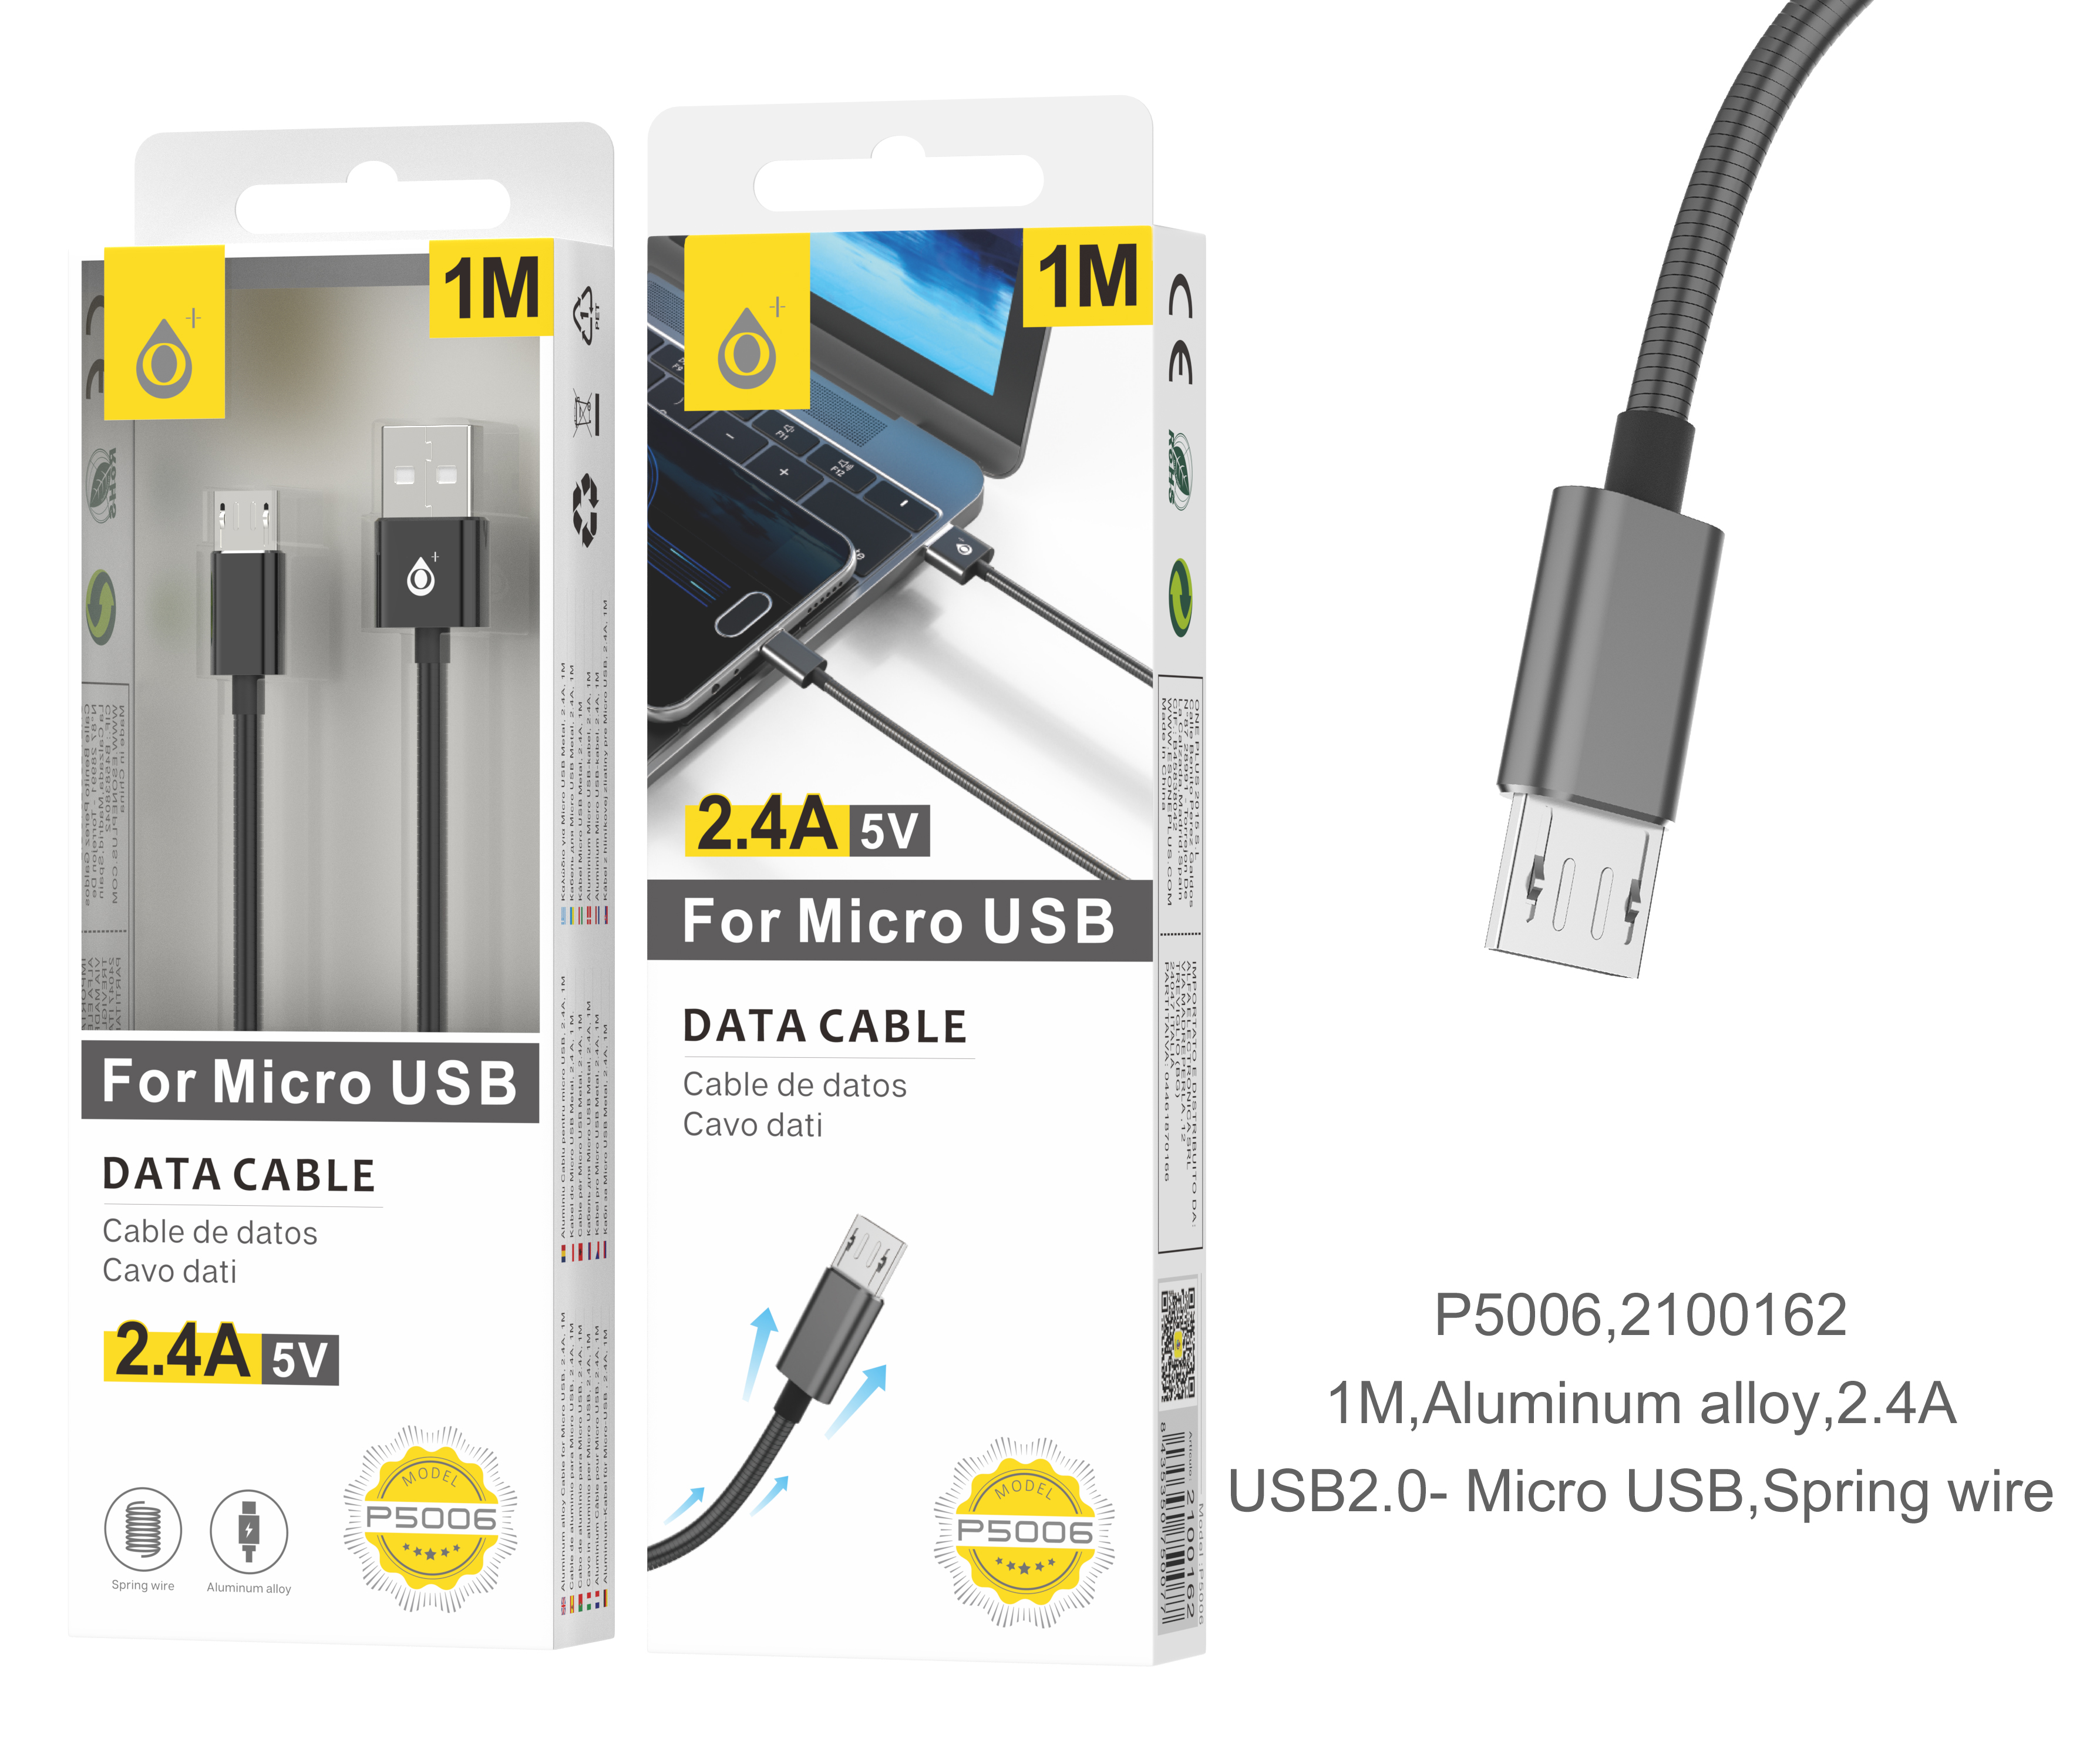 P5006 NE Cable de dato Merga Metalico para MicroUSB Negro, 2A, 1M